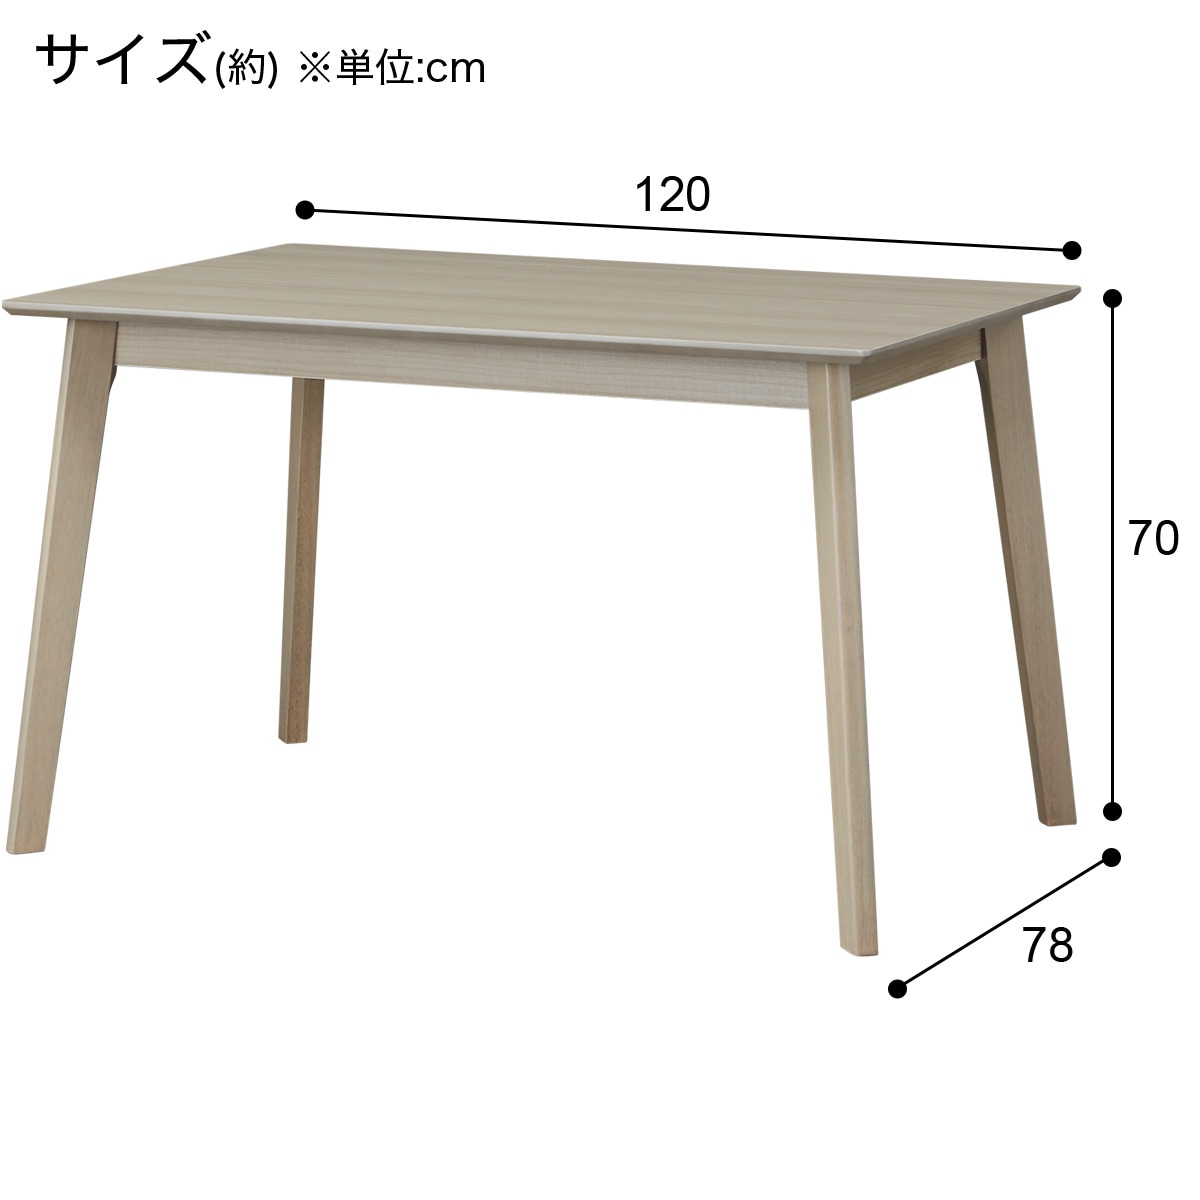 ダイニングテーブル(4LEG GY 120 SJ601)